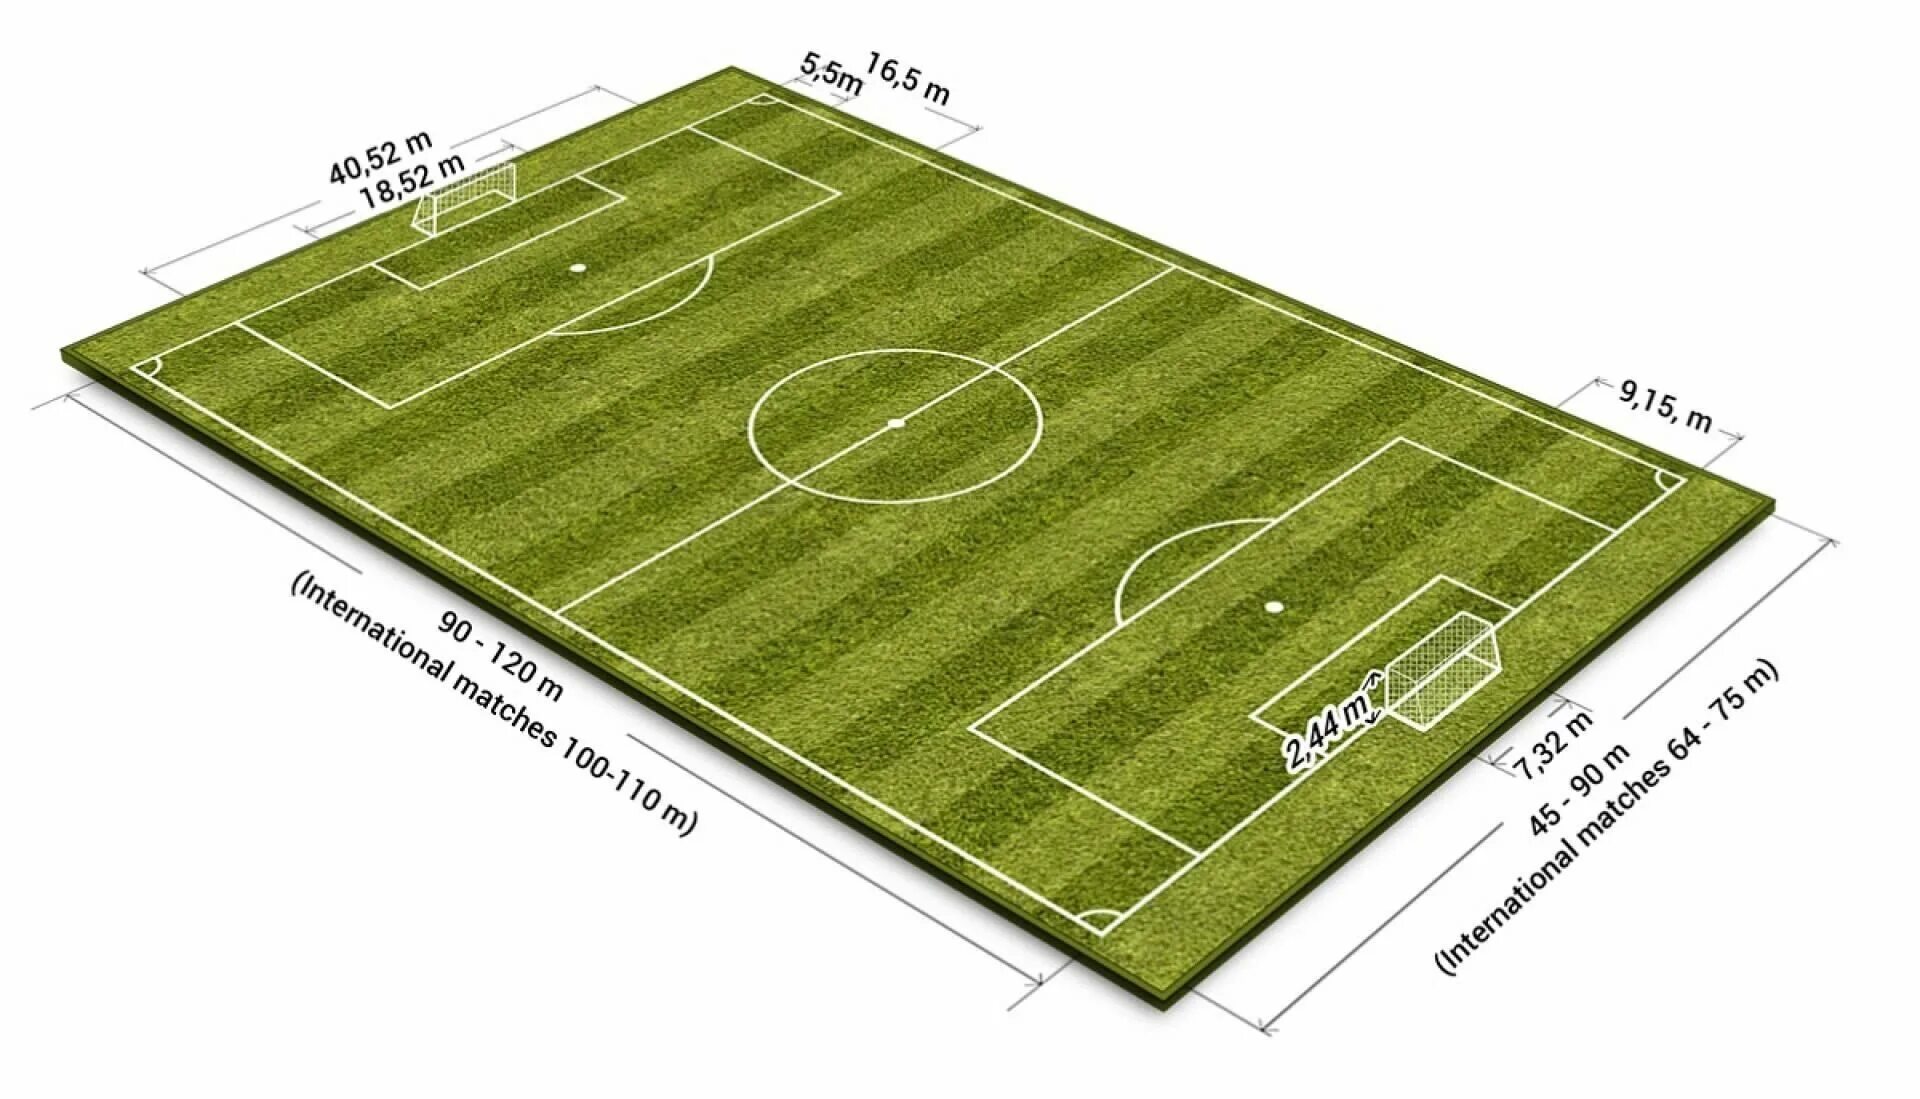 Длина поля 130 метров ширина. Площадь футбольного поля м2 стандарт. Разметка футбольного поля 68х105. Стандарт футбольного поля ФИФА. Размер футбольного поля FIFA.